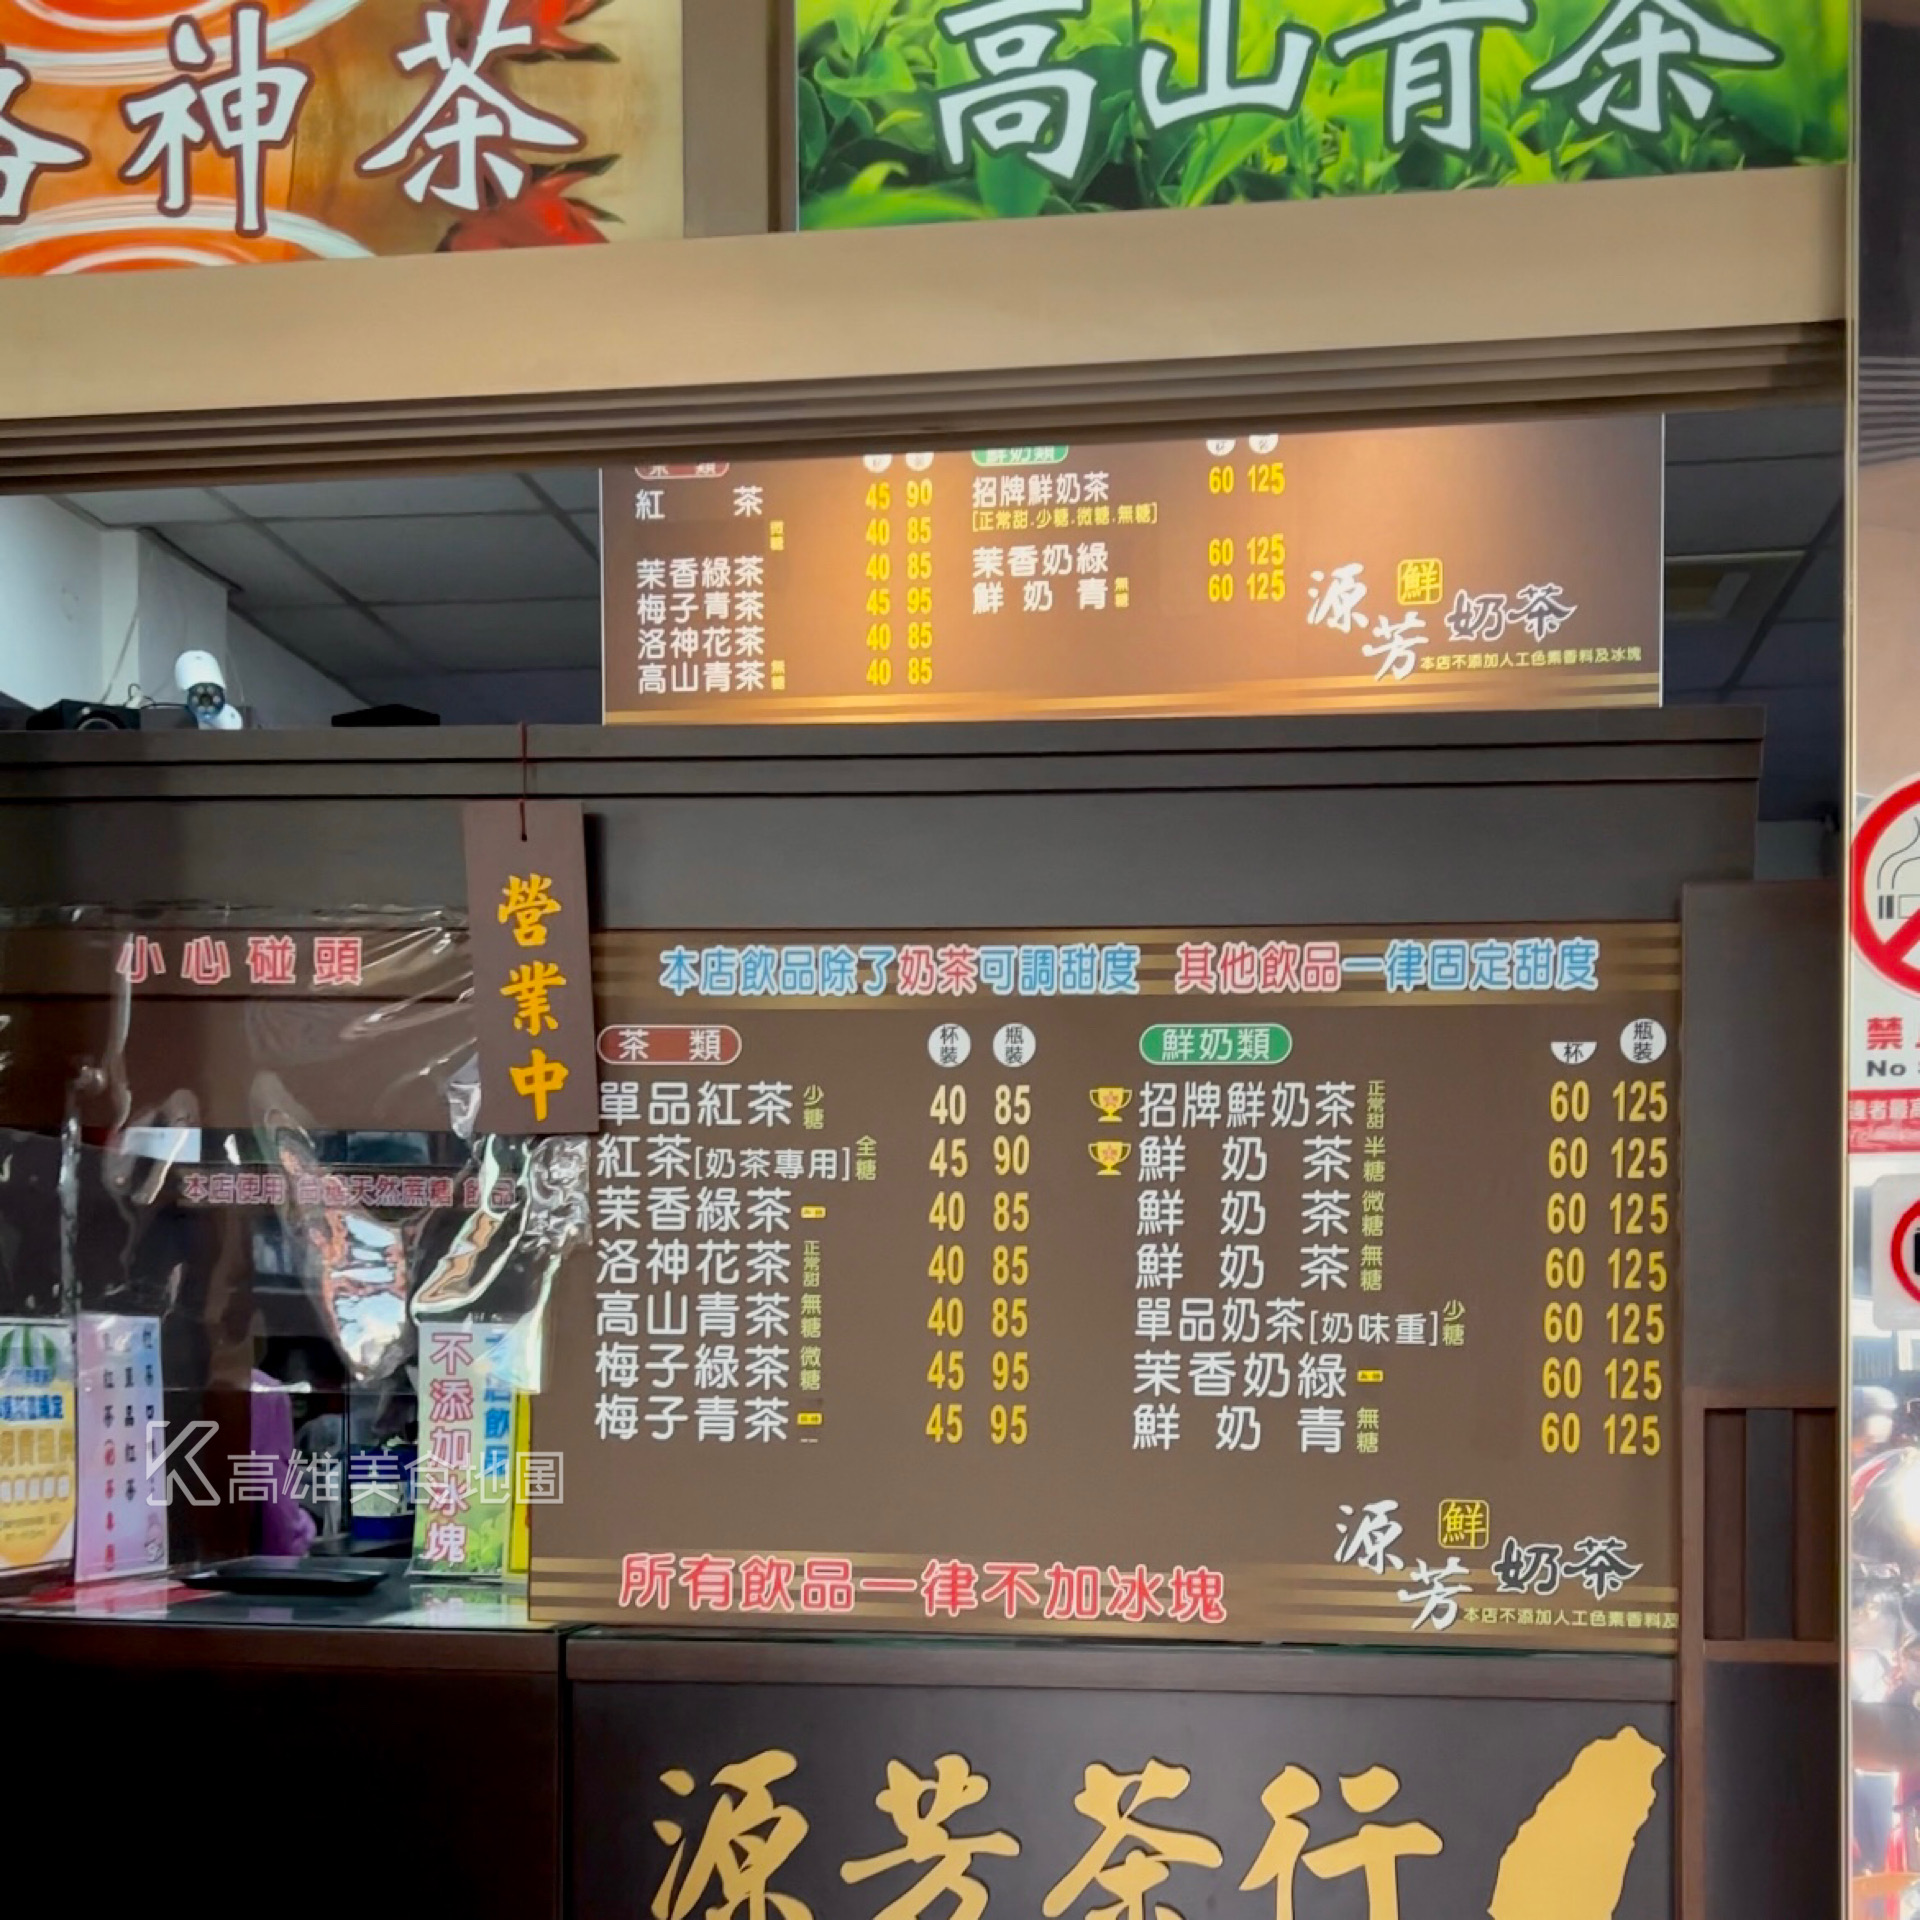 源芳茶行(高雄苓雅)隱藏在漢神本館附近 30年的老字號鮮奶茶